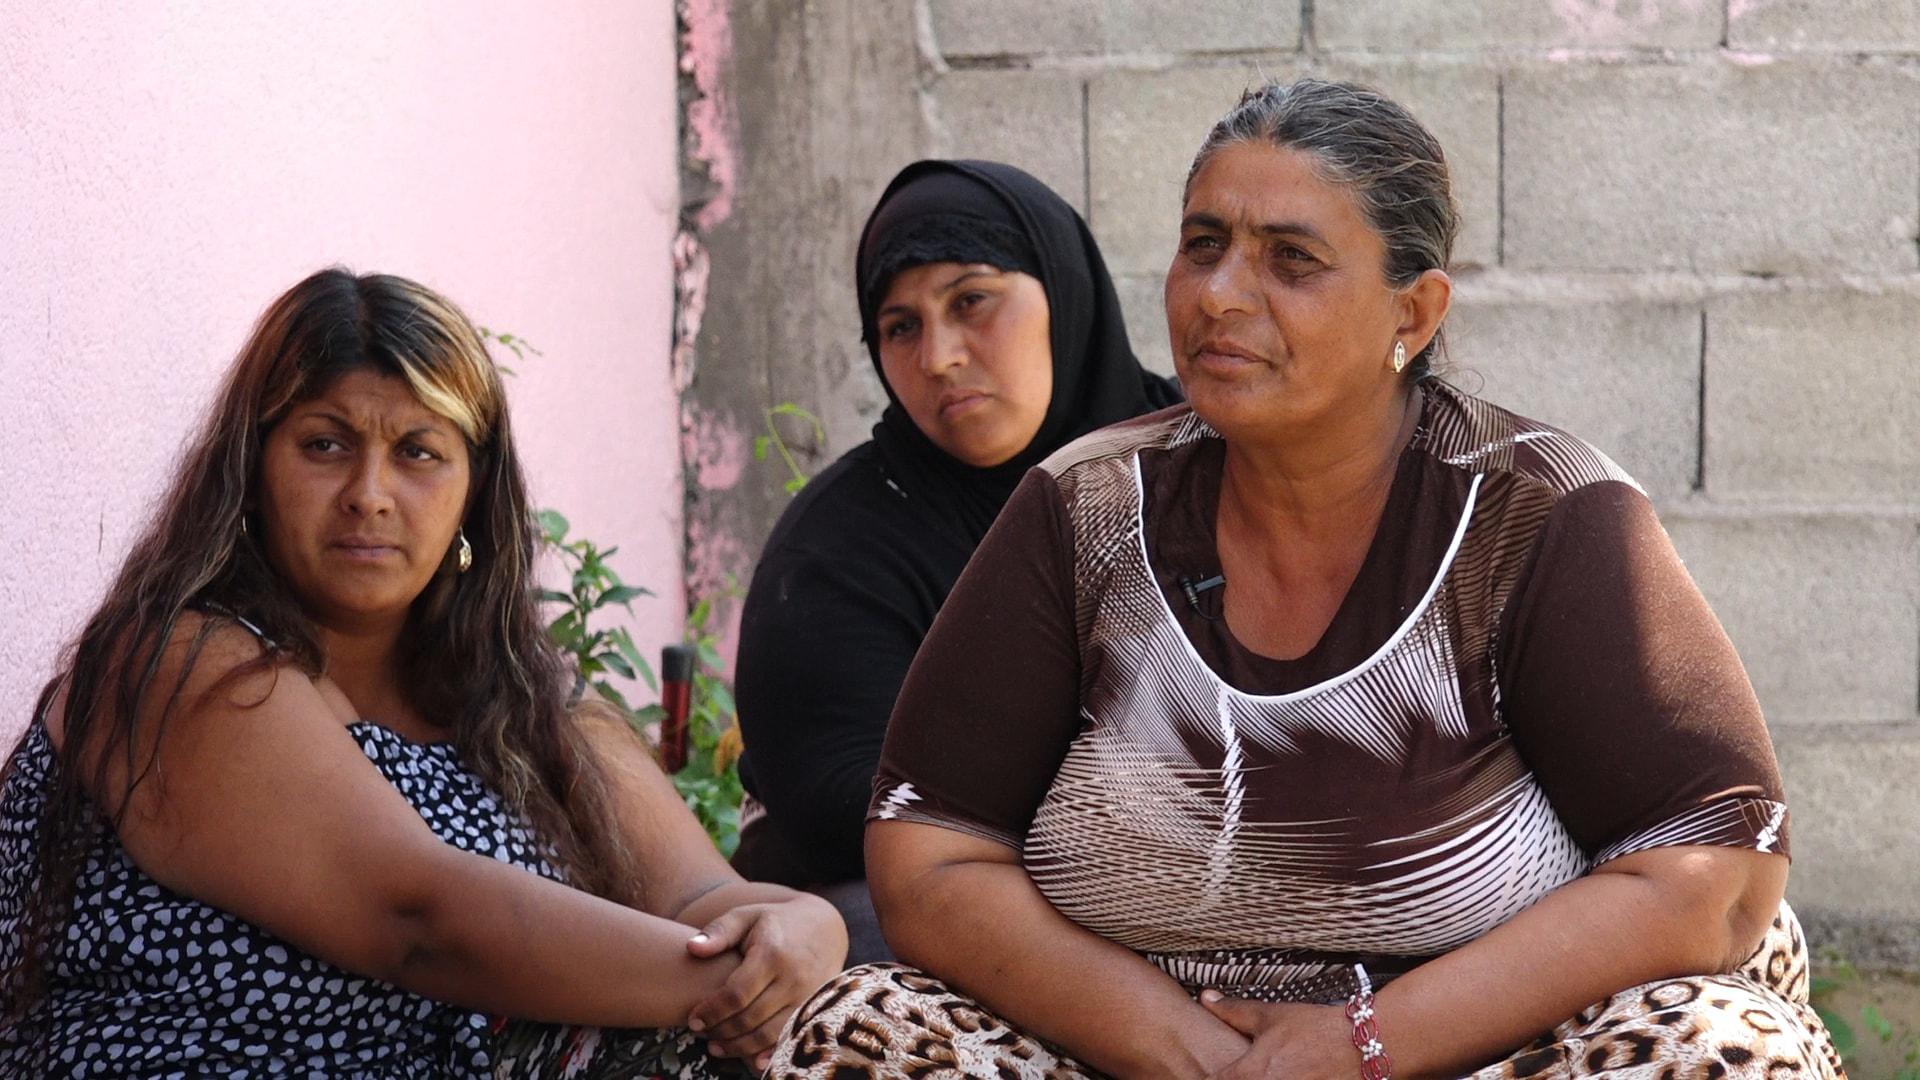 Hazbije (djathtas) nënë 50-vjecare e 9 fëmijëve, tha se burri i saj vdiq para dy vitesh, duke e lënë të kujdeset për fëmijët e vetme. Mitrovicë, 27 qershor 2017.